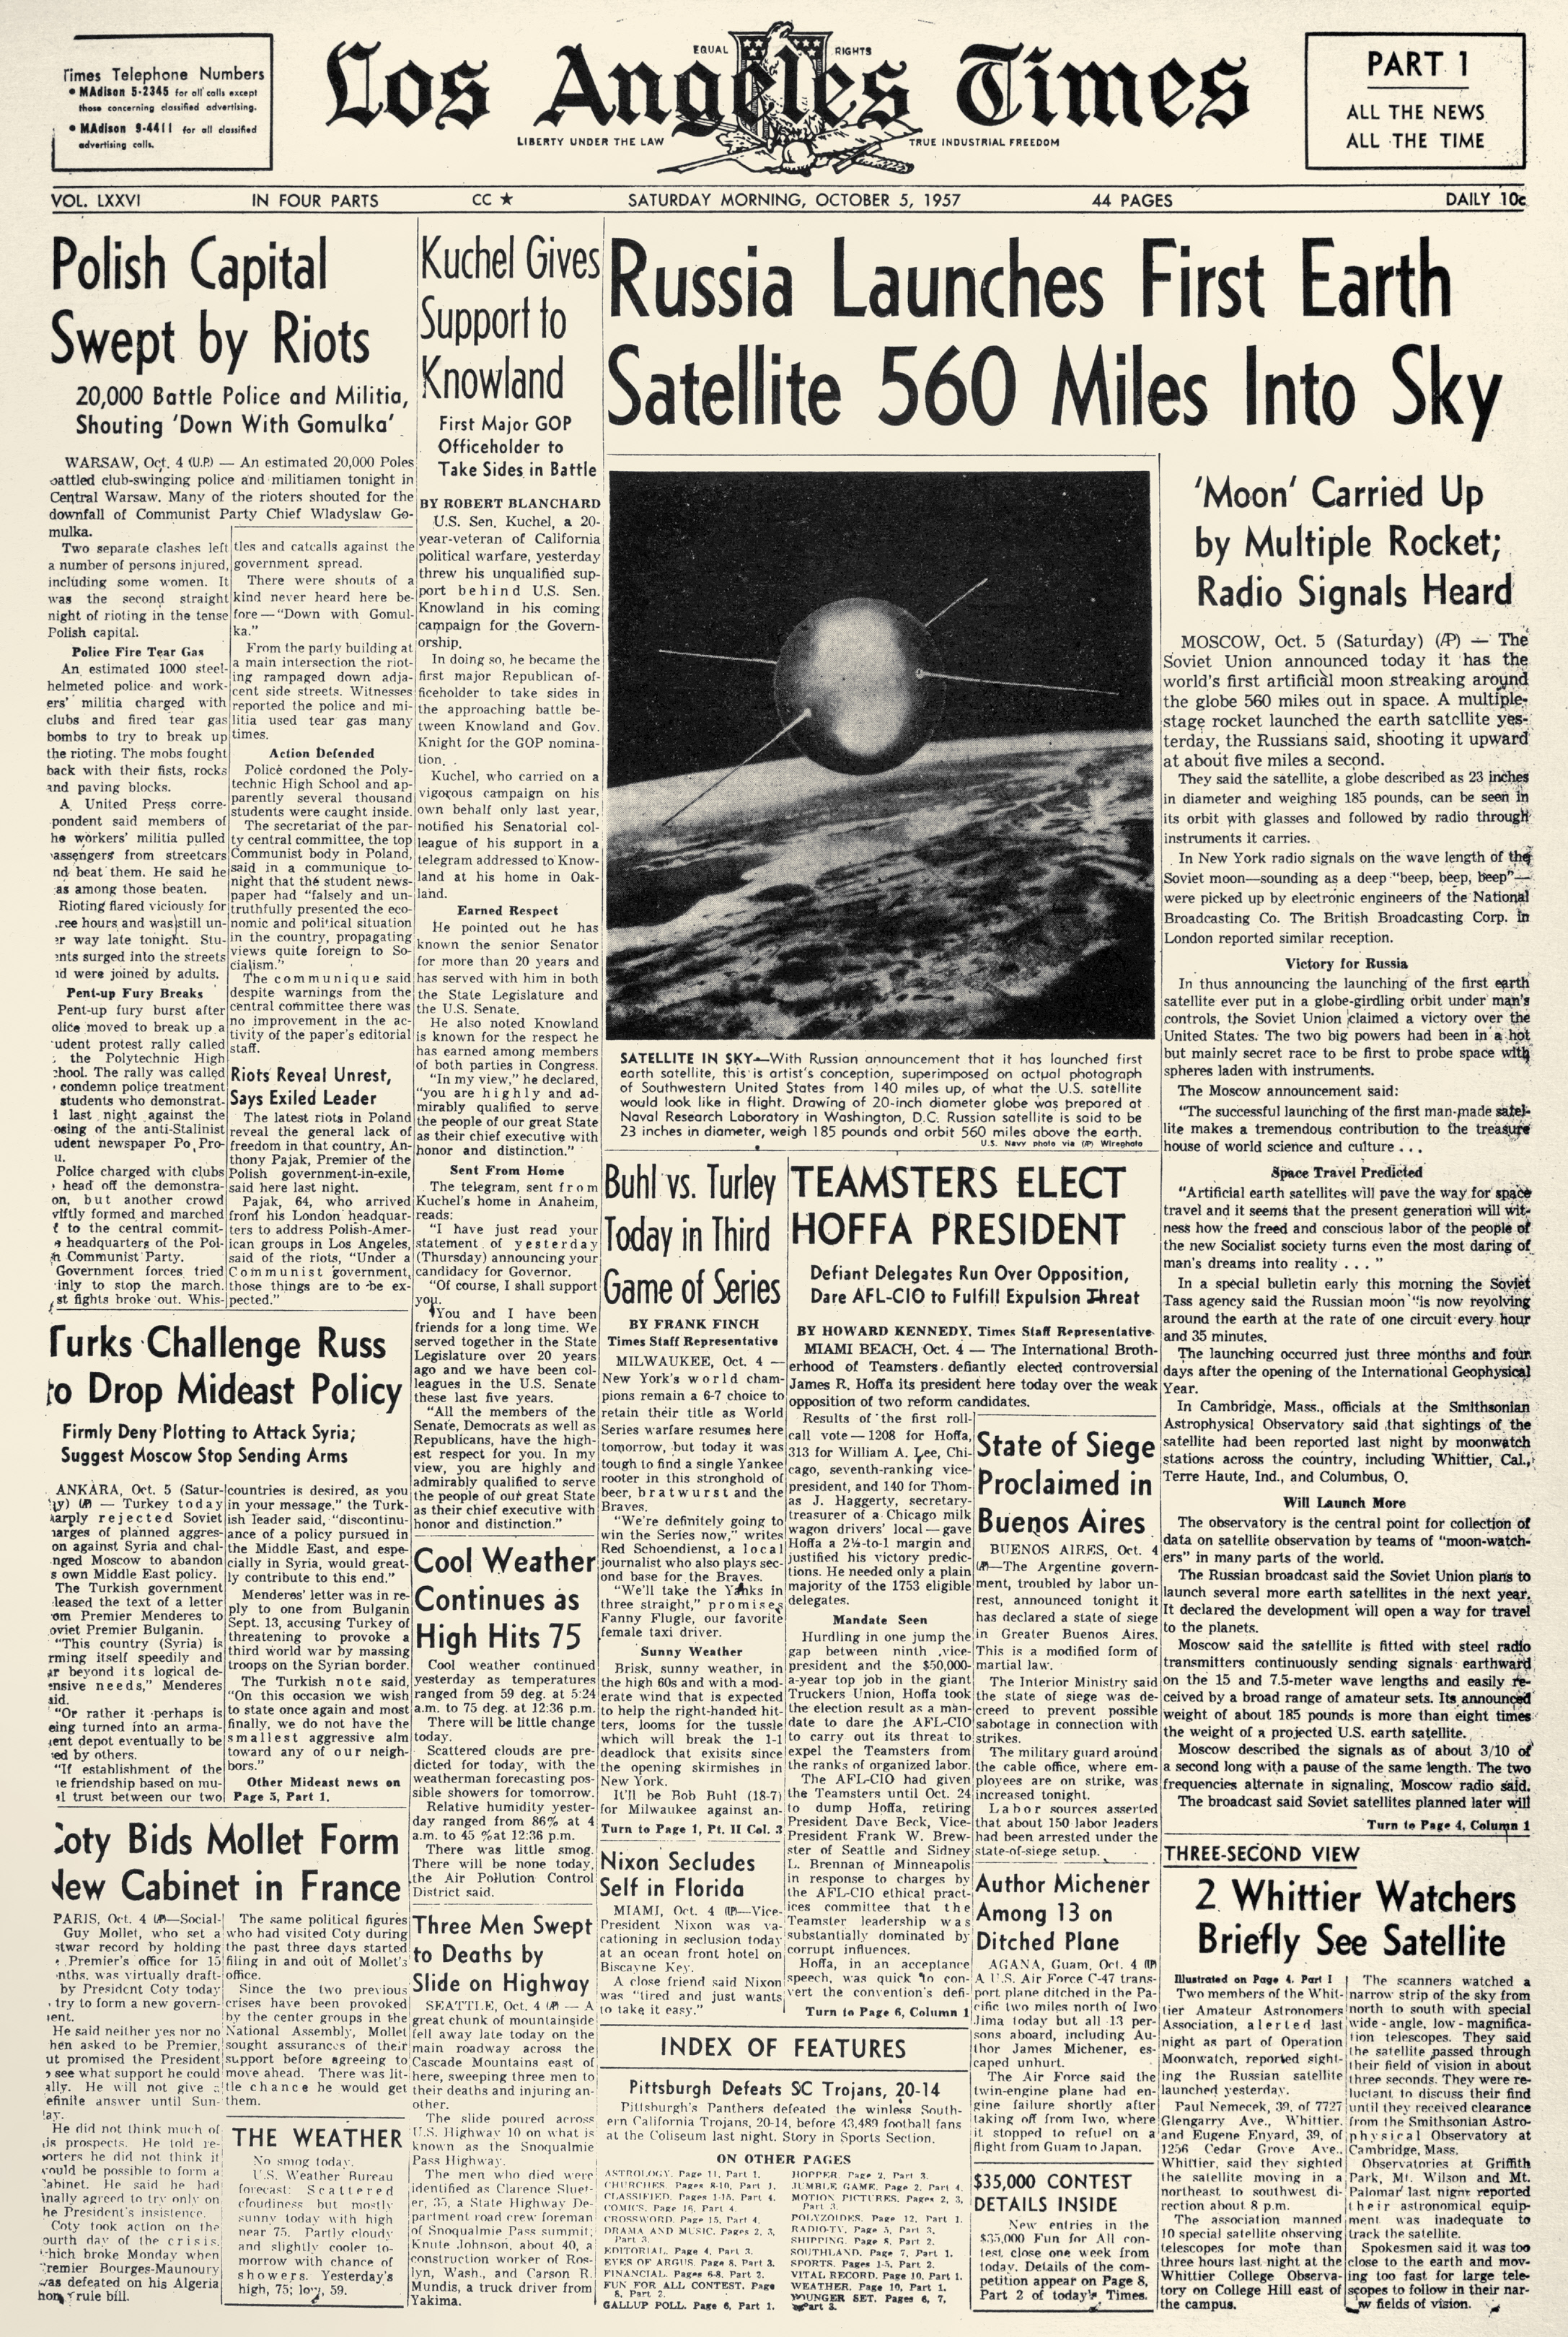 الصفحة الأولى لصحيفة لوس أنجلوس تايمز بتاريخ 5 أكتوبر من عام 1957.